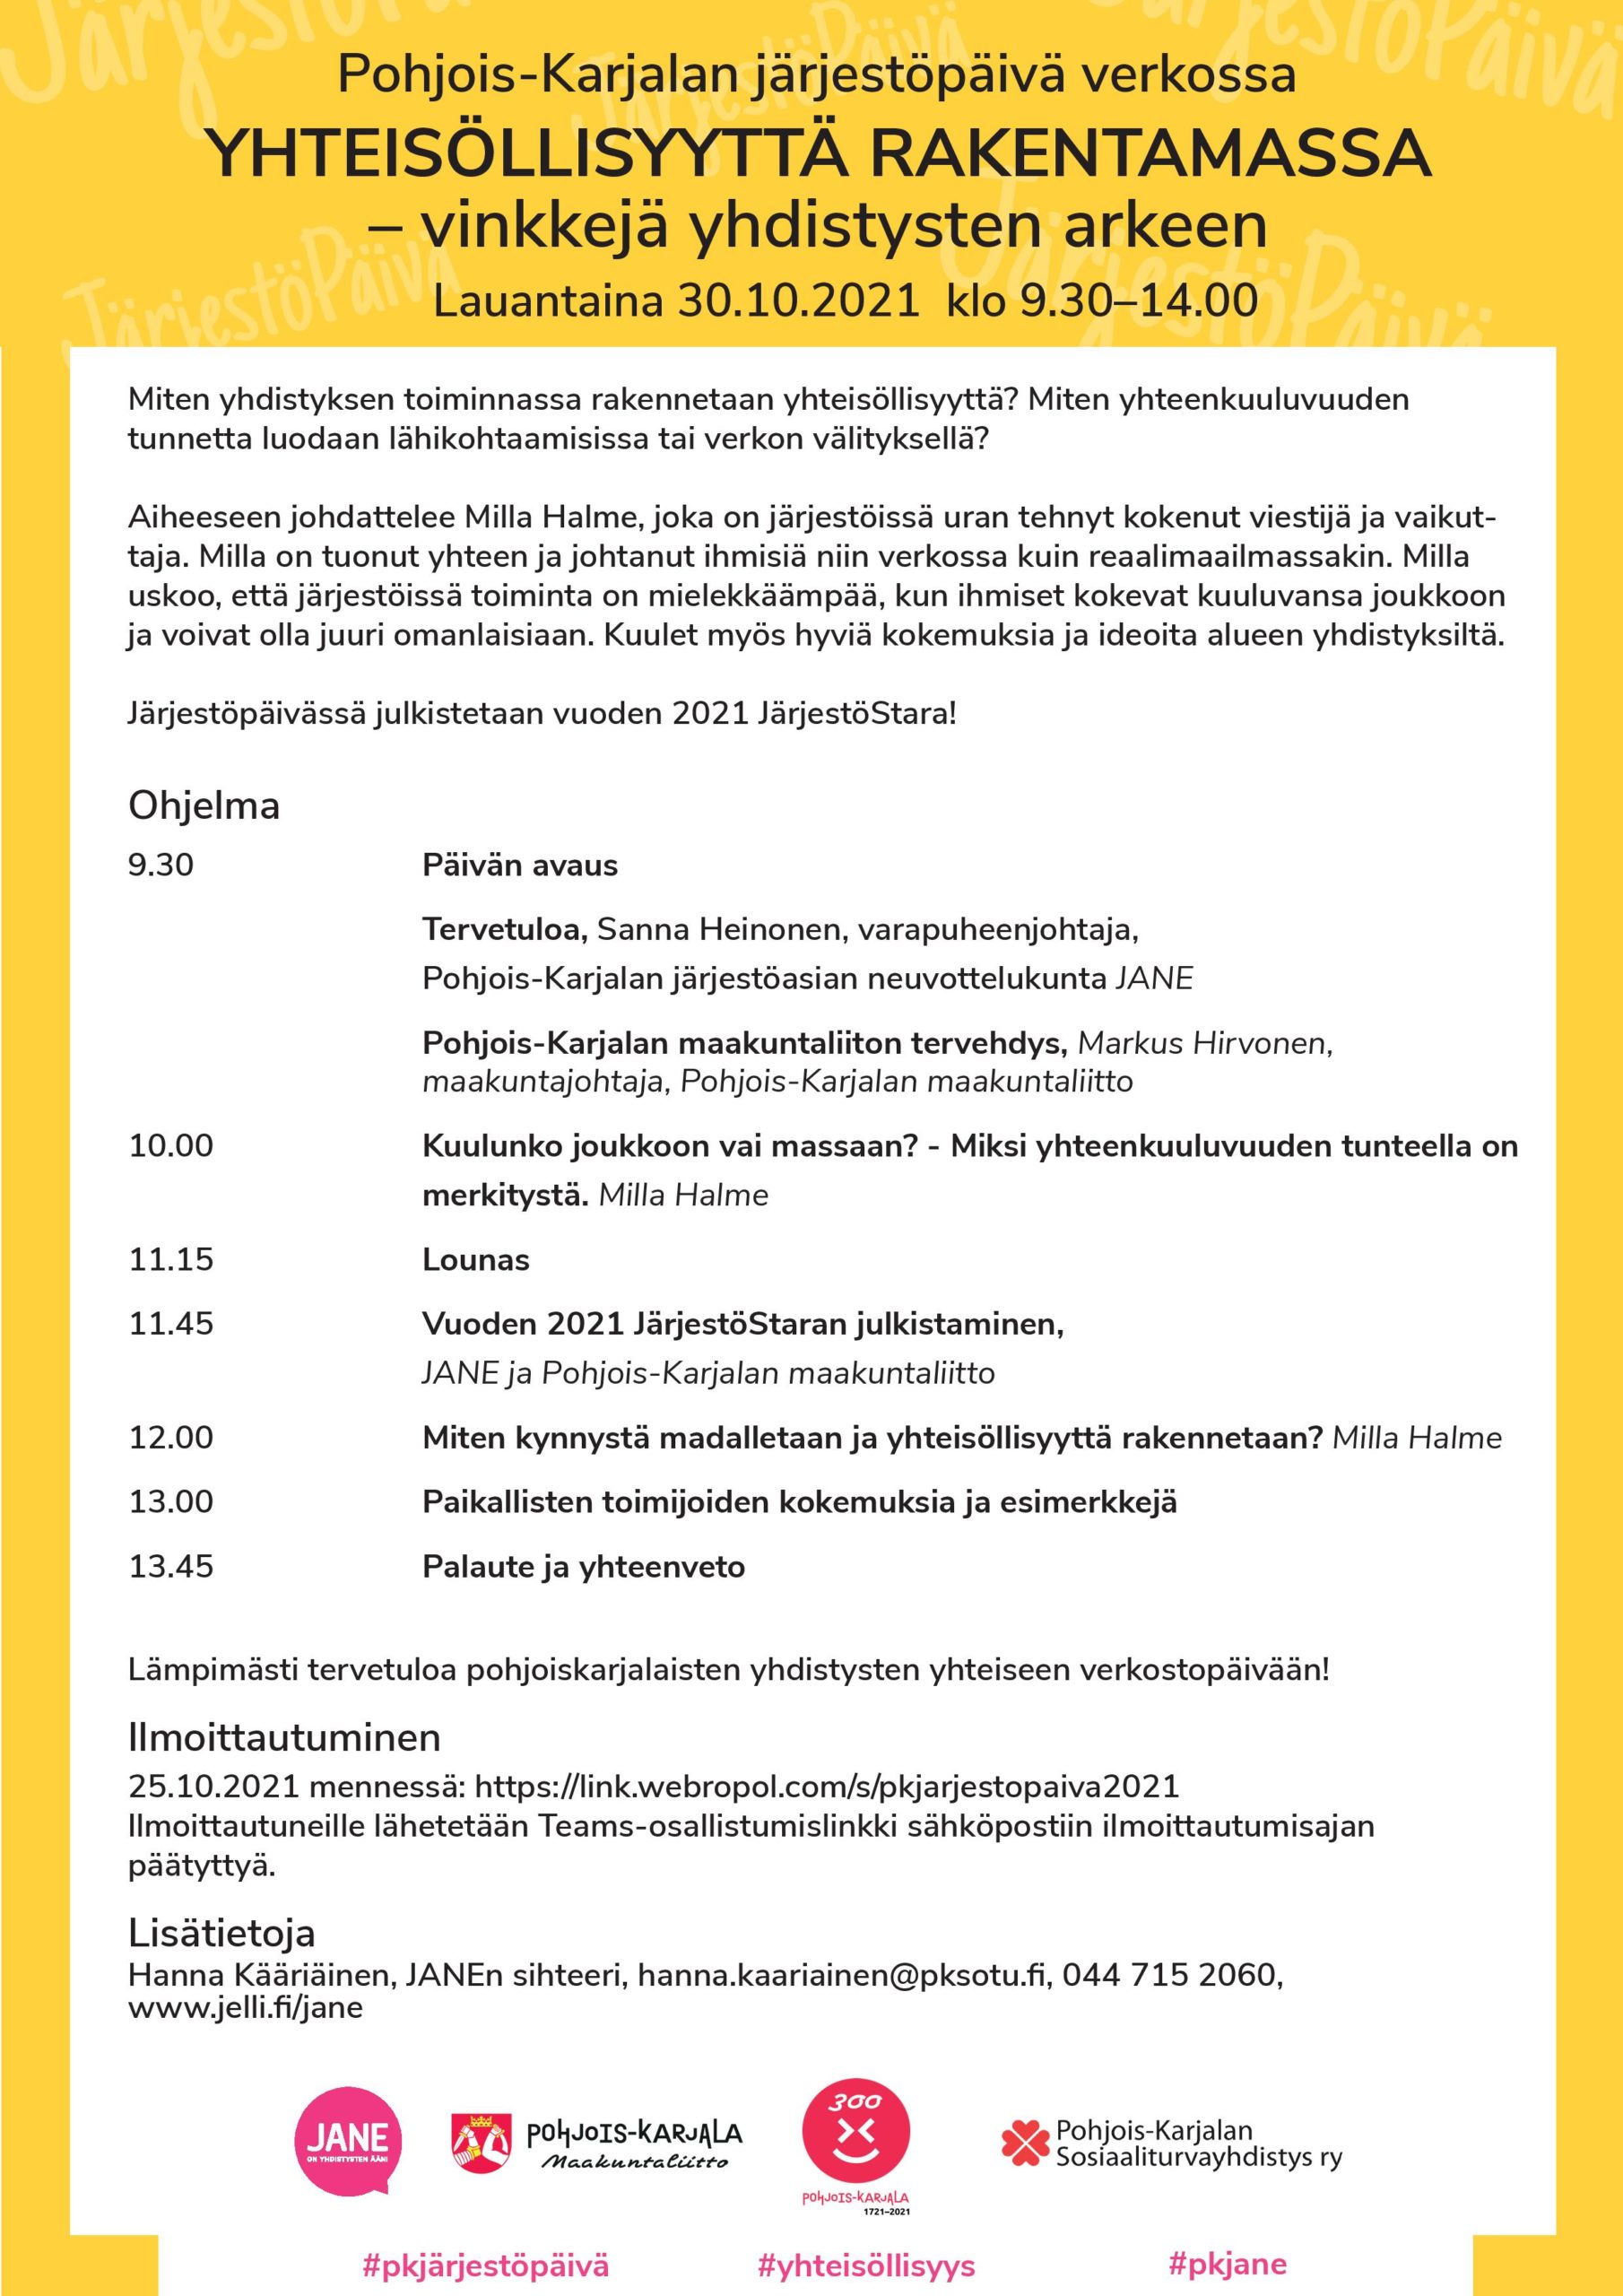 Pohjois-Karjalan järjestöpäivän ohjelma 30.10.2021